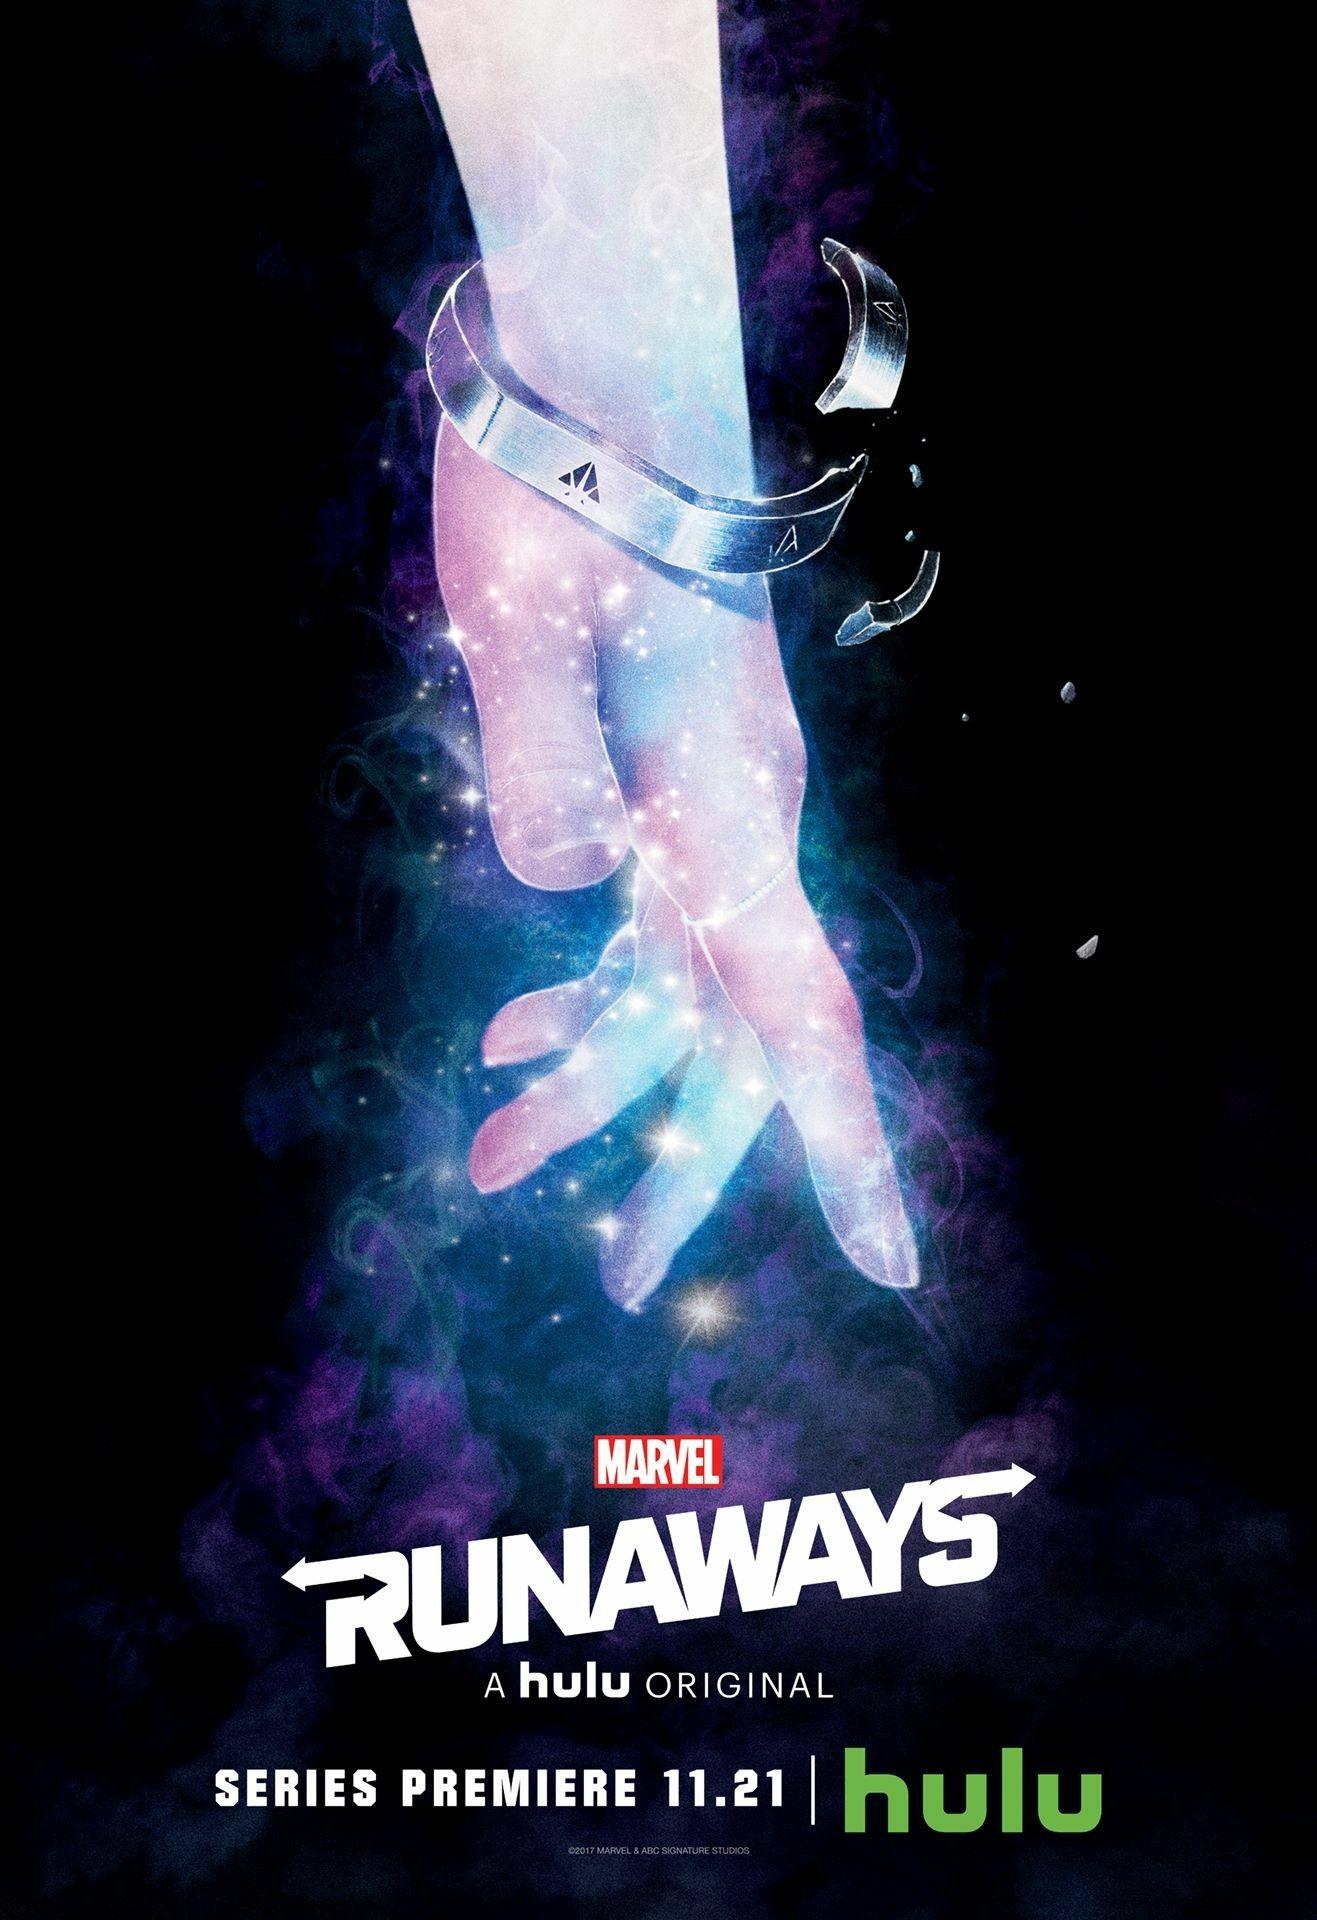 Karolina Dean Runaways. Runaways marvel, Runaways tv